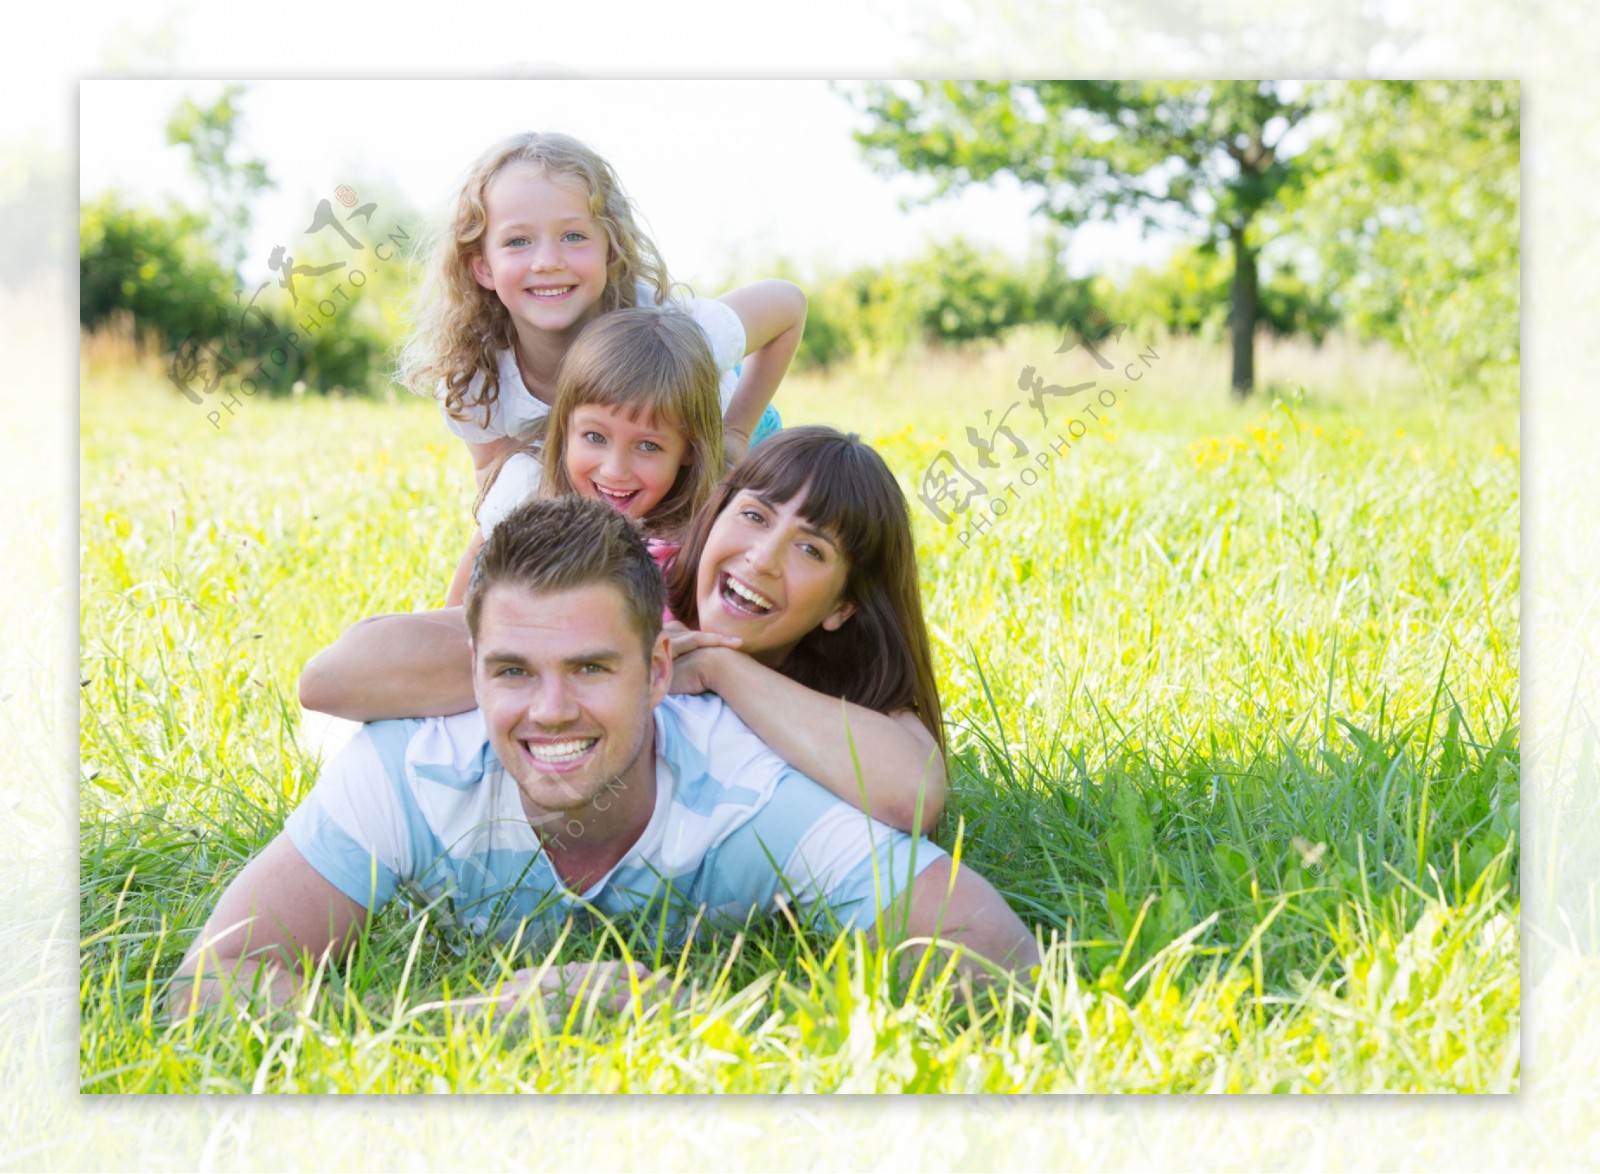 趴在草地幸福的一家人图片